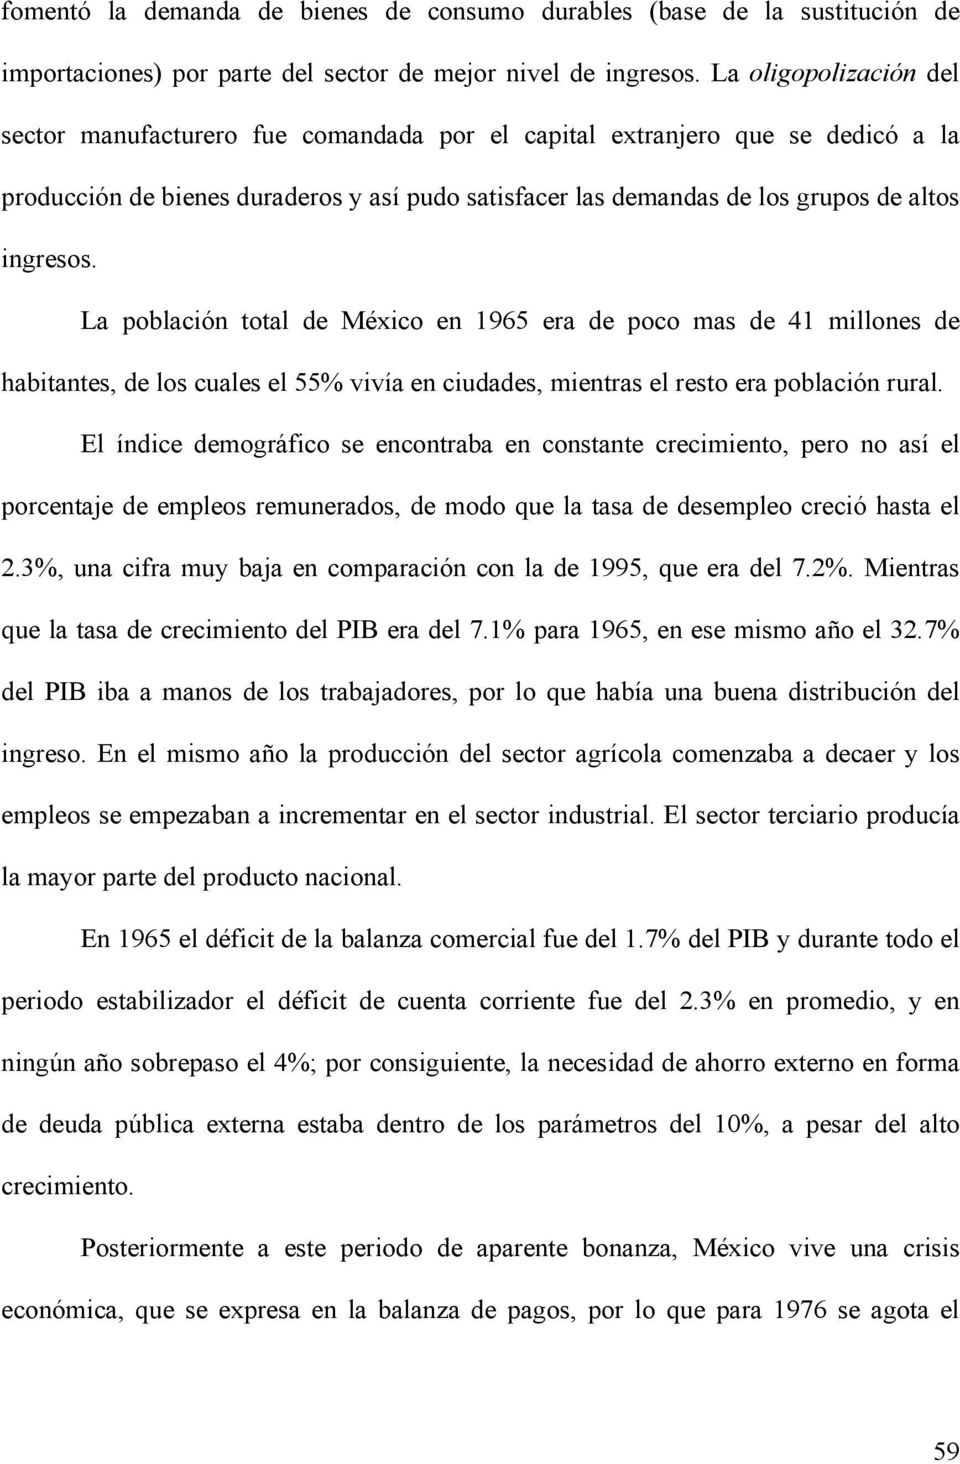 ingresos. La población total de México en 1965 era de poco mas de 41 millones de habitantes, de los cuales el 55% vivía en ciudades, mientras el resto era población rural.